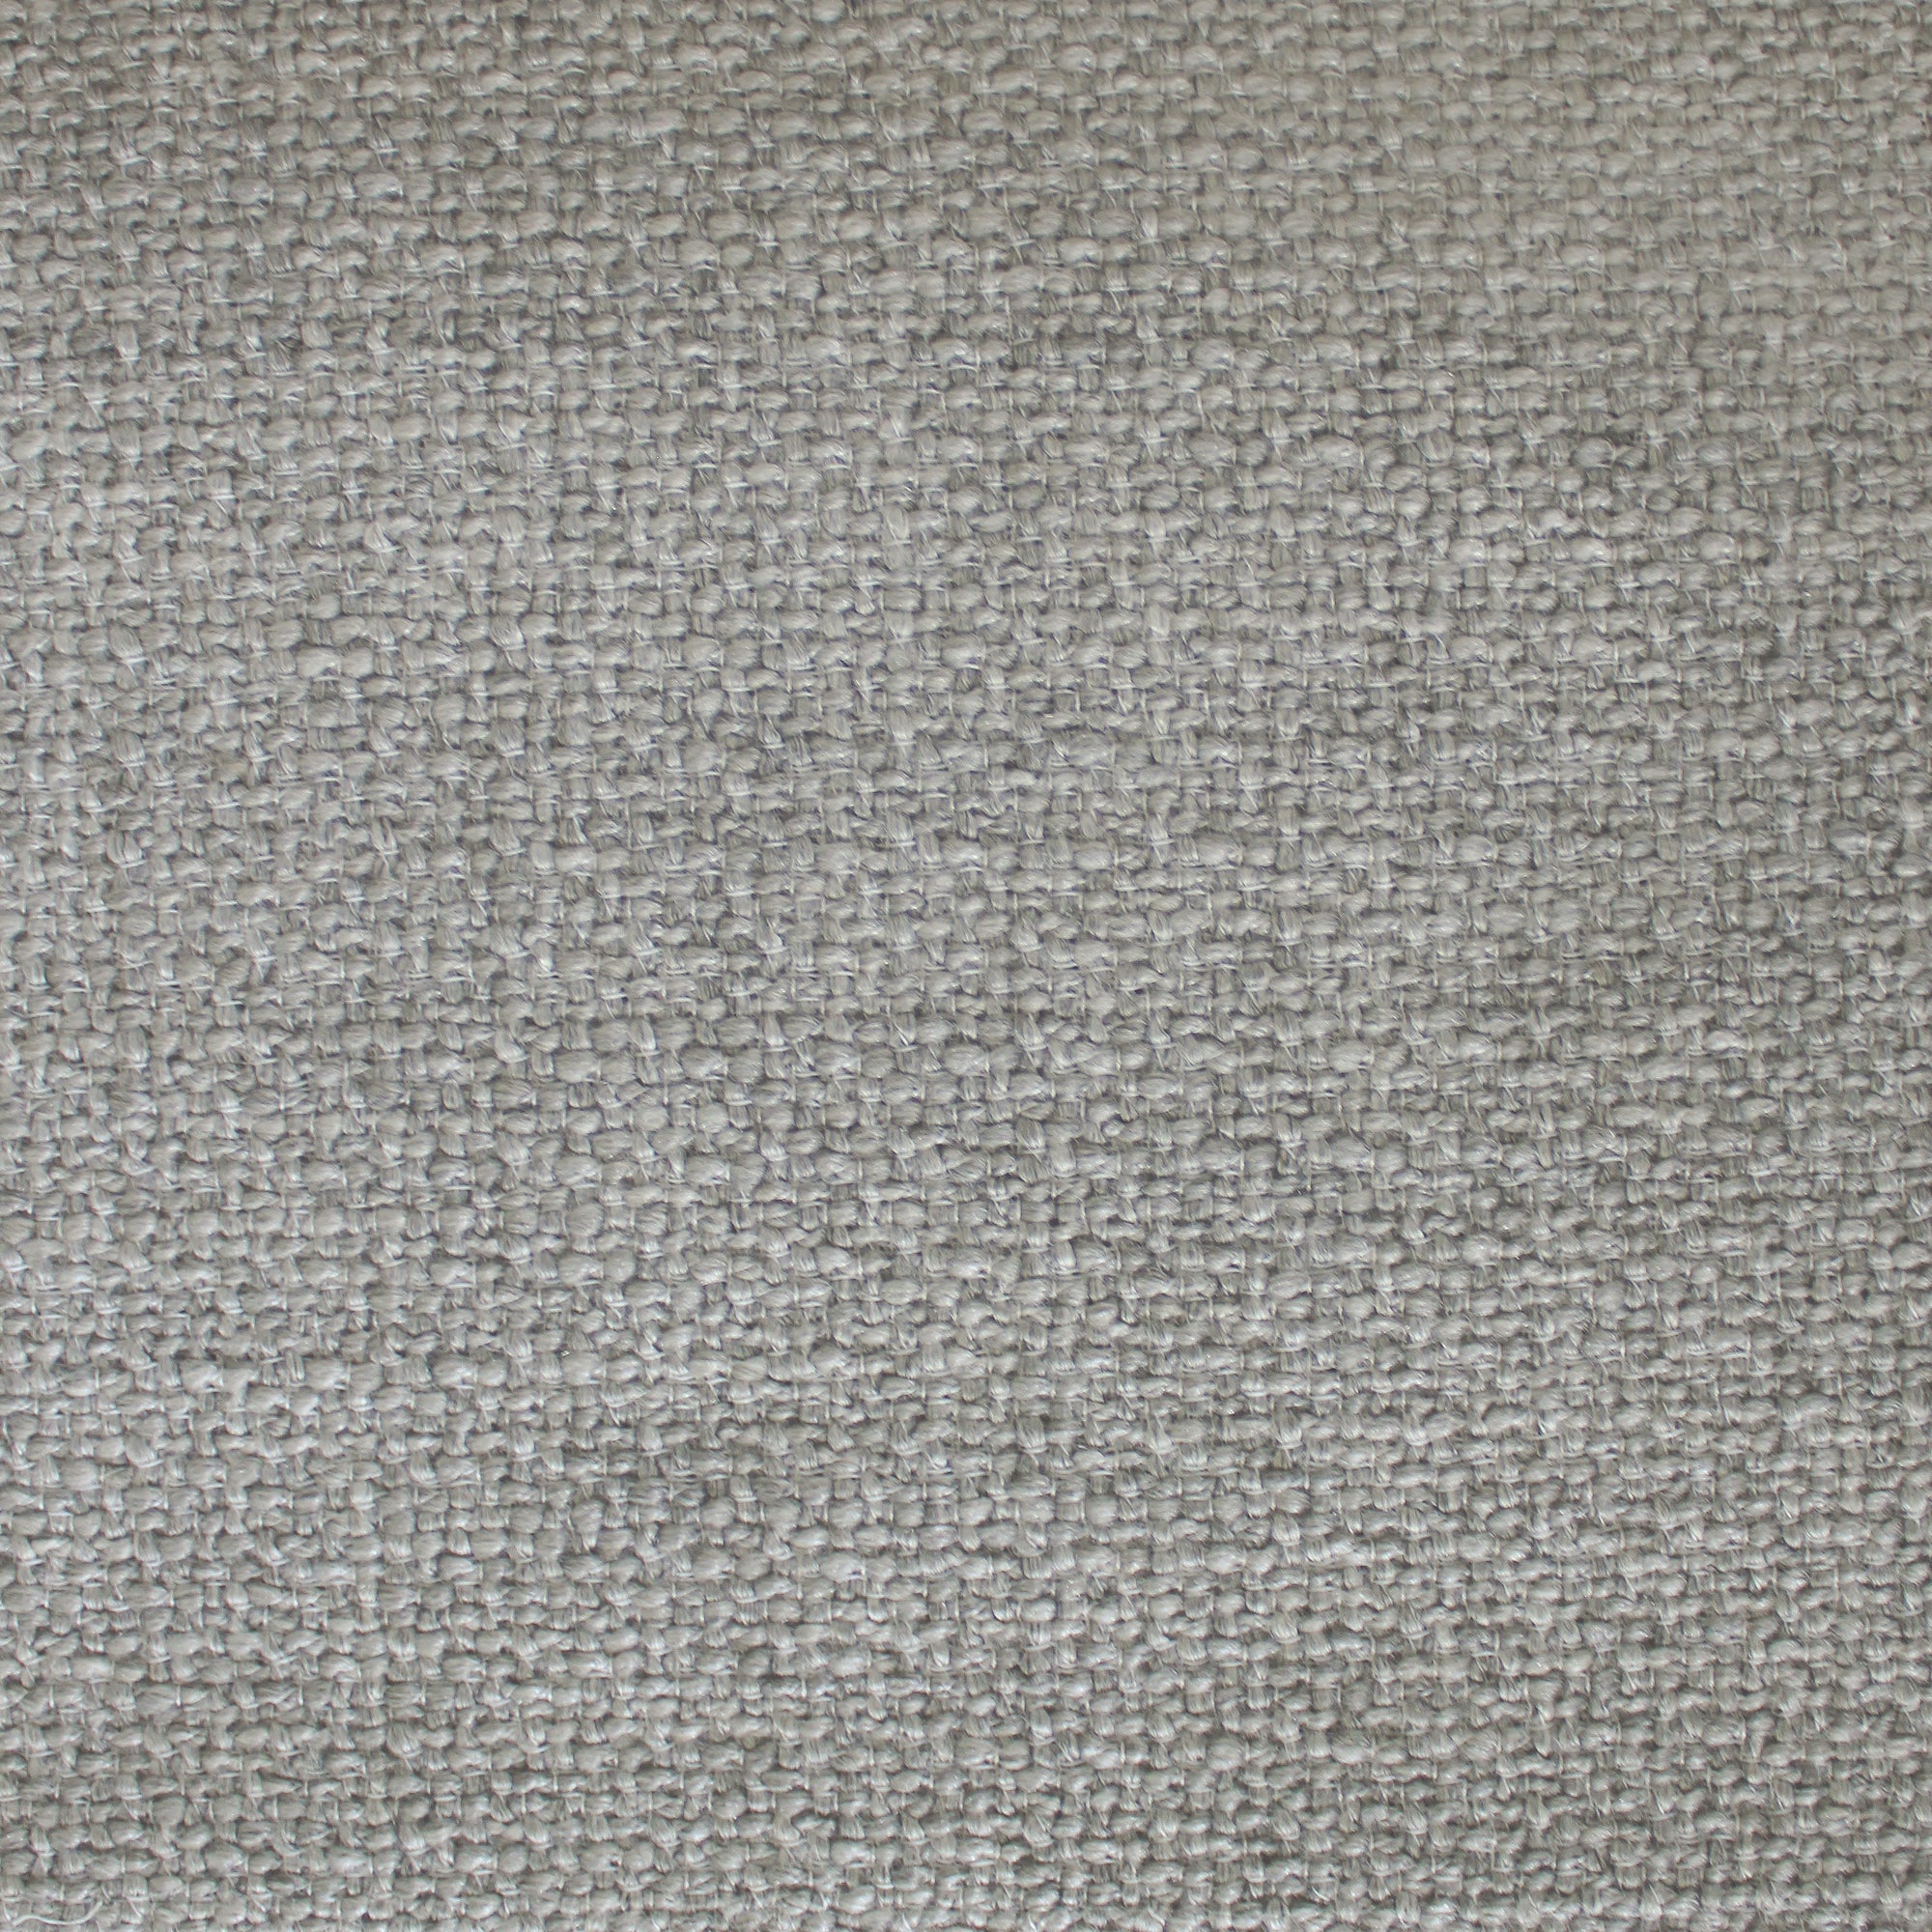 Huntley Fabric | Textured Solid Linen Look